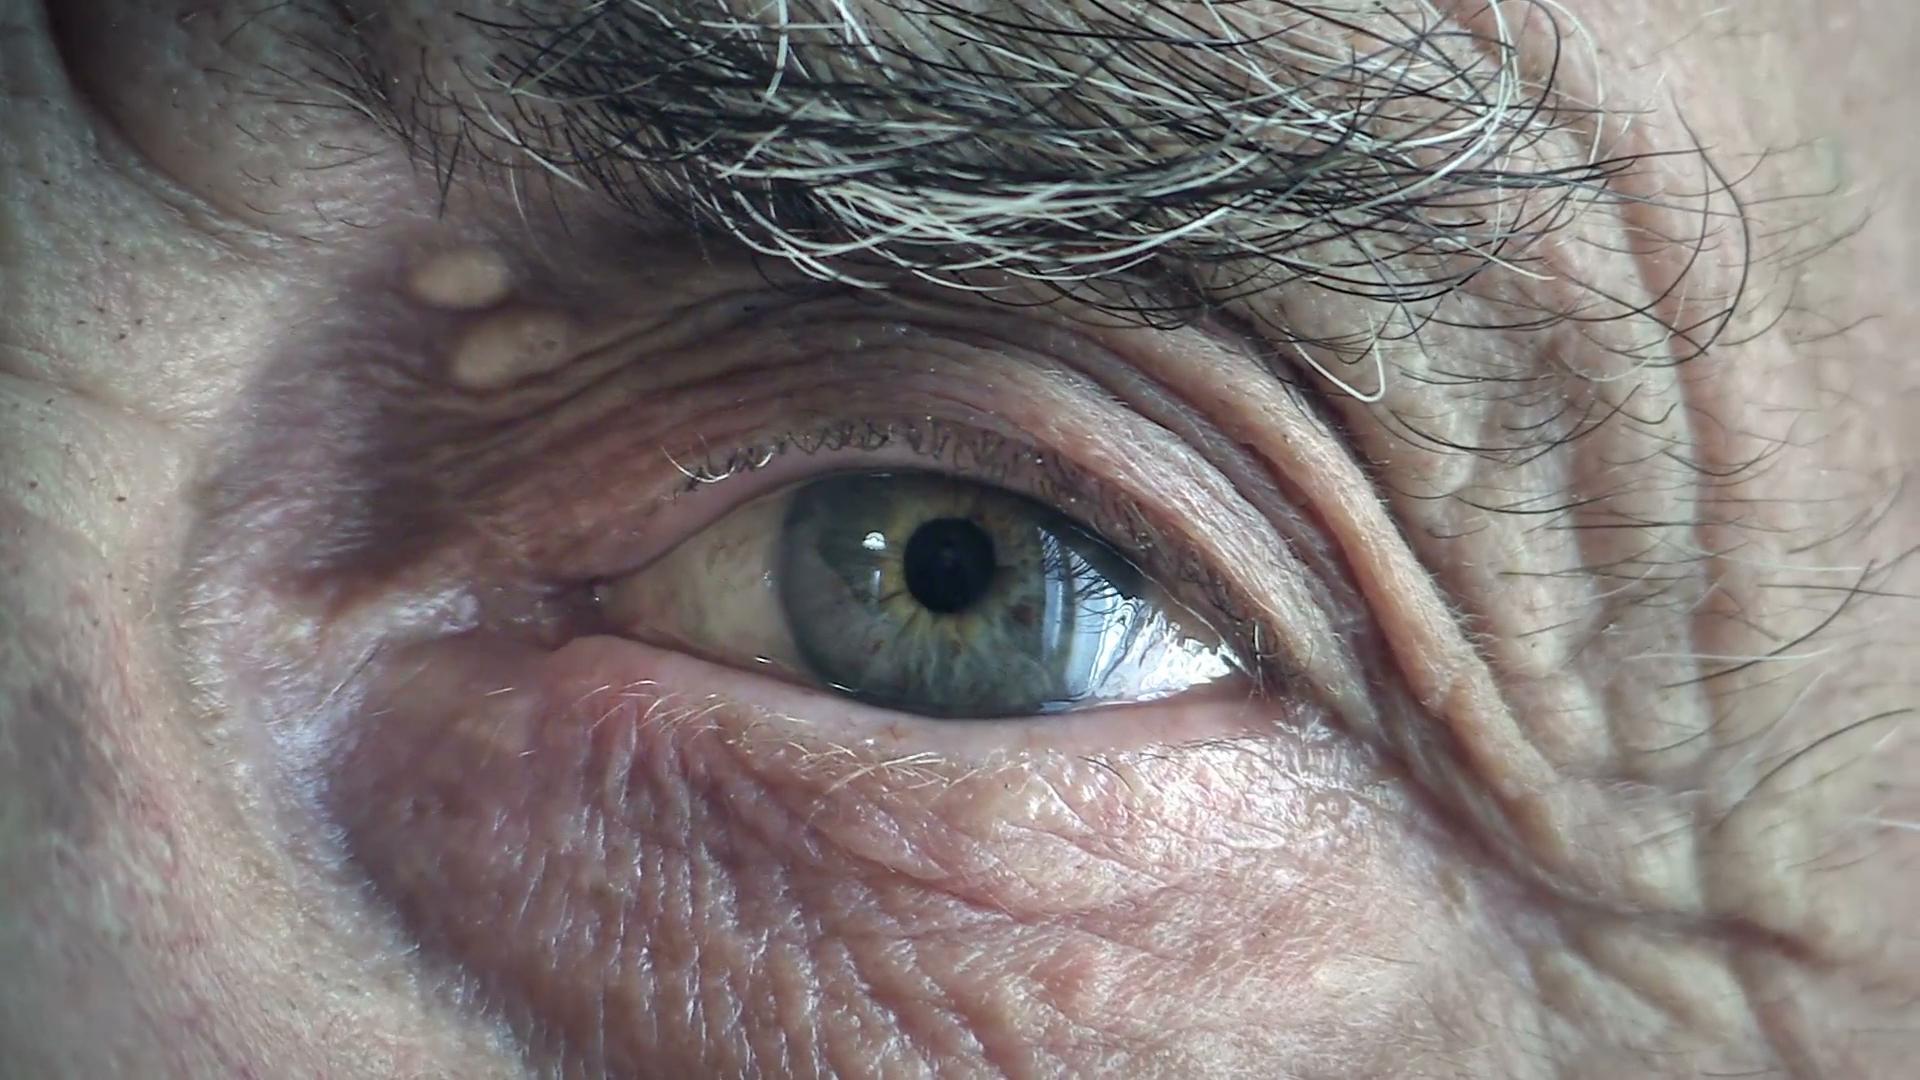 SARS-Cov-2 нашли в глазах 64-летней пациентки через два месяца после выздоровления